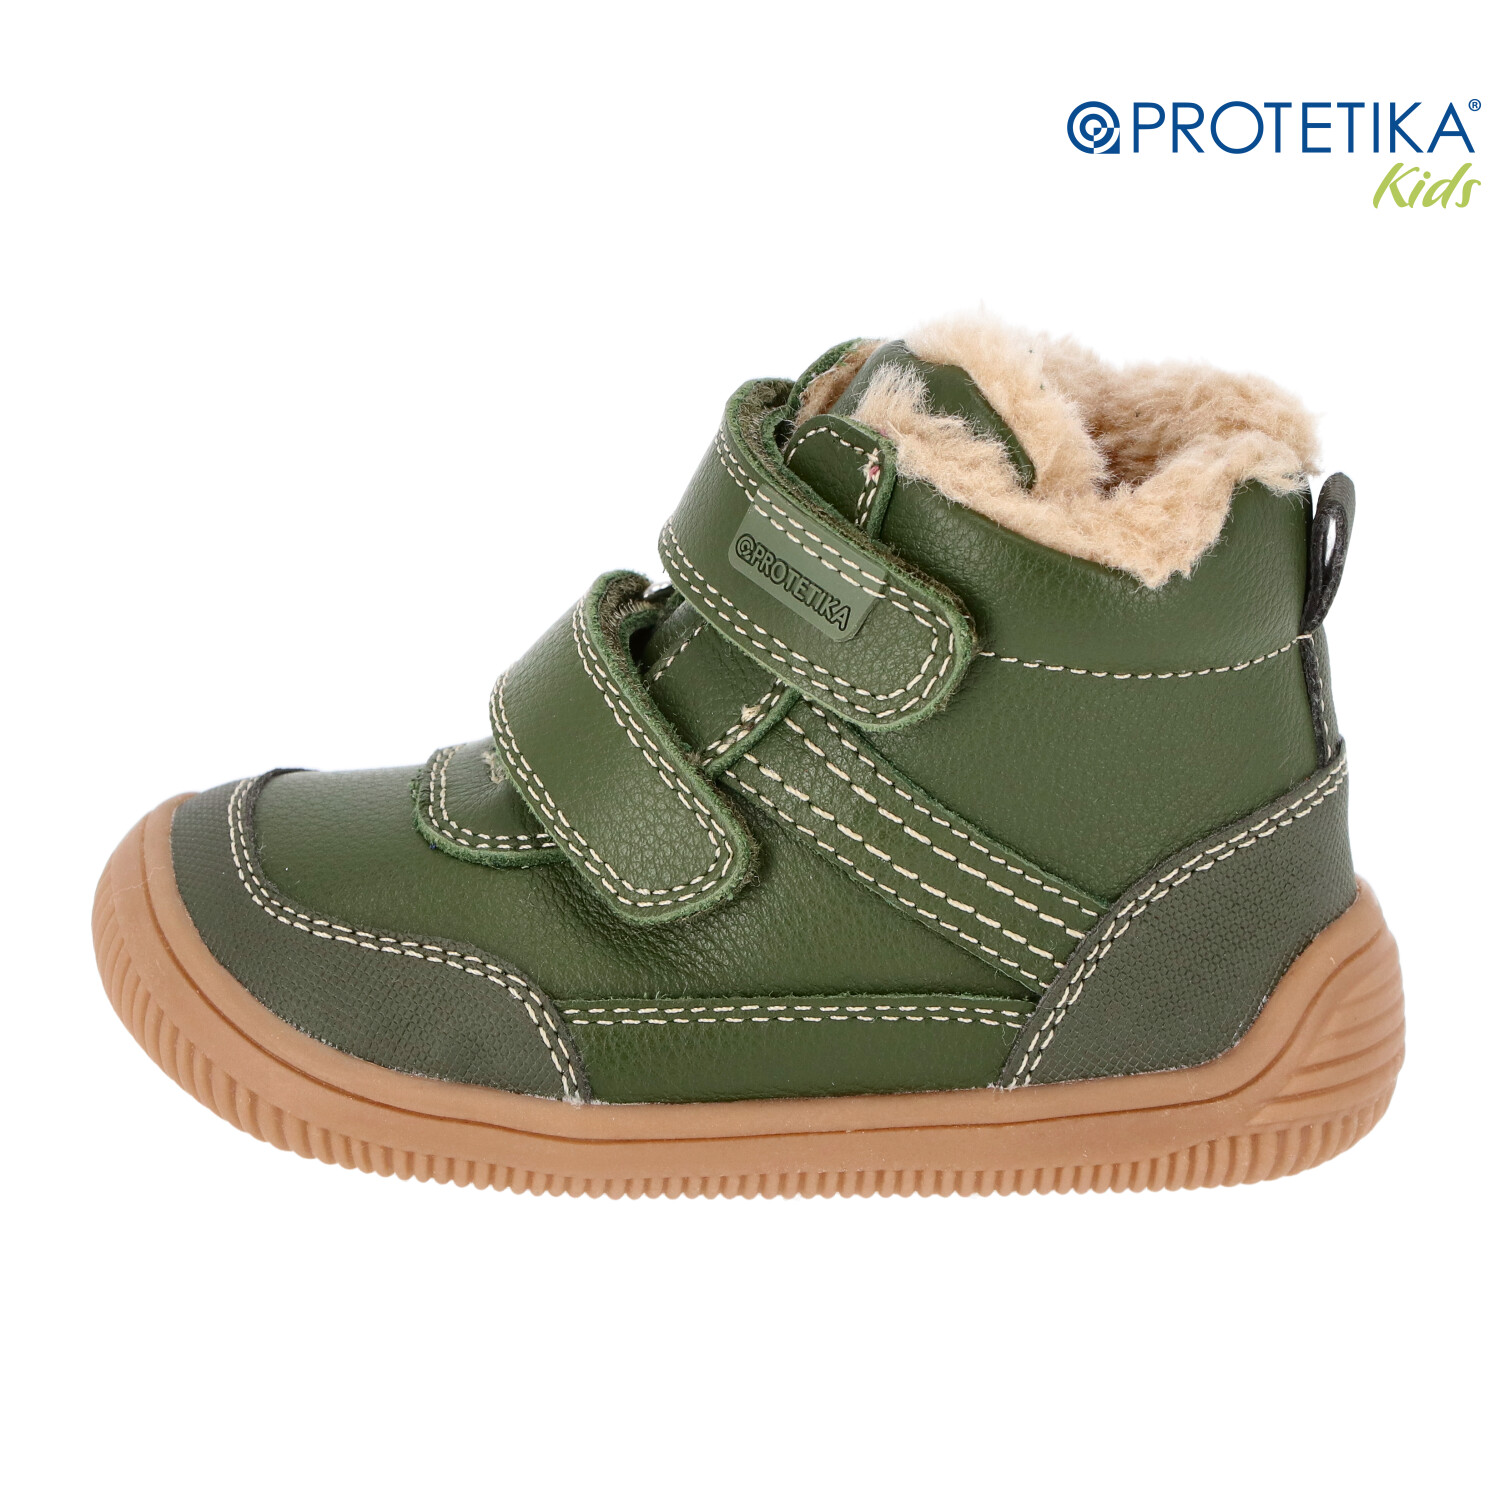 Protetika - zimné barefootové topánky TYREL khaki - zateplené kožušinkou